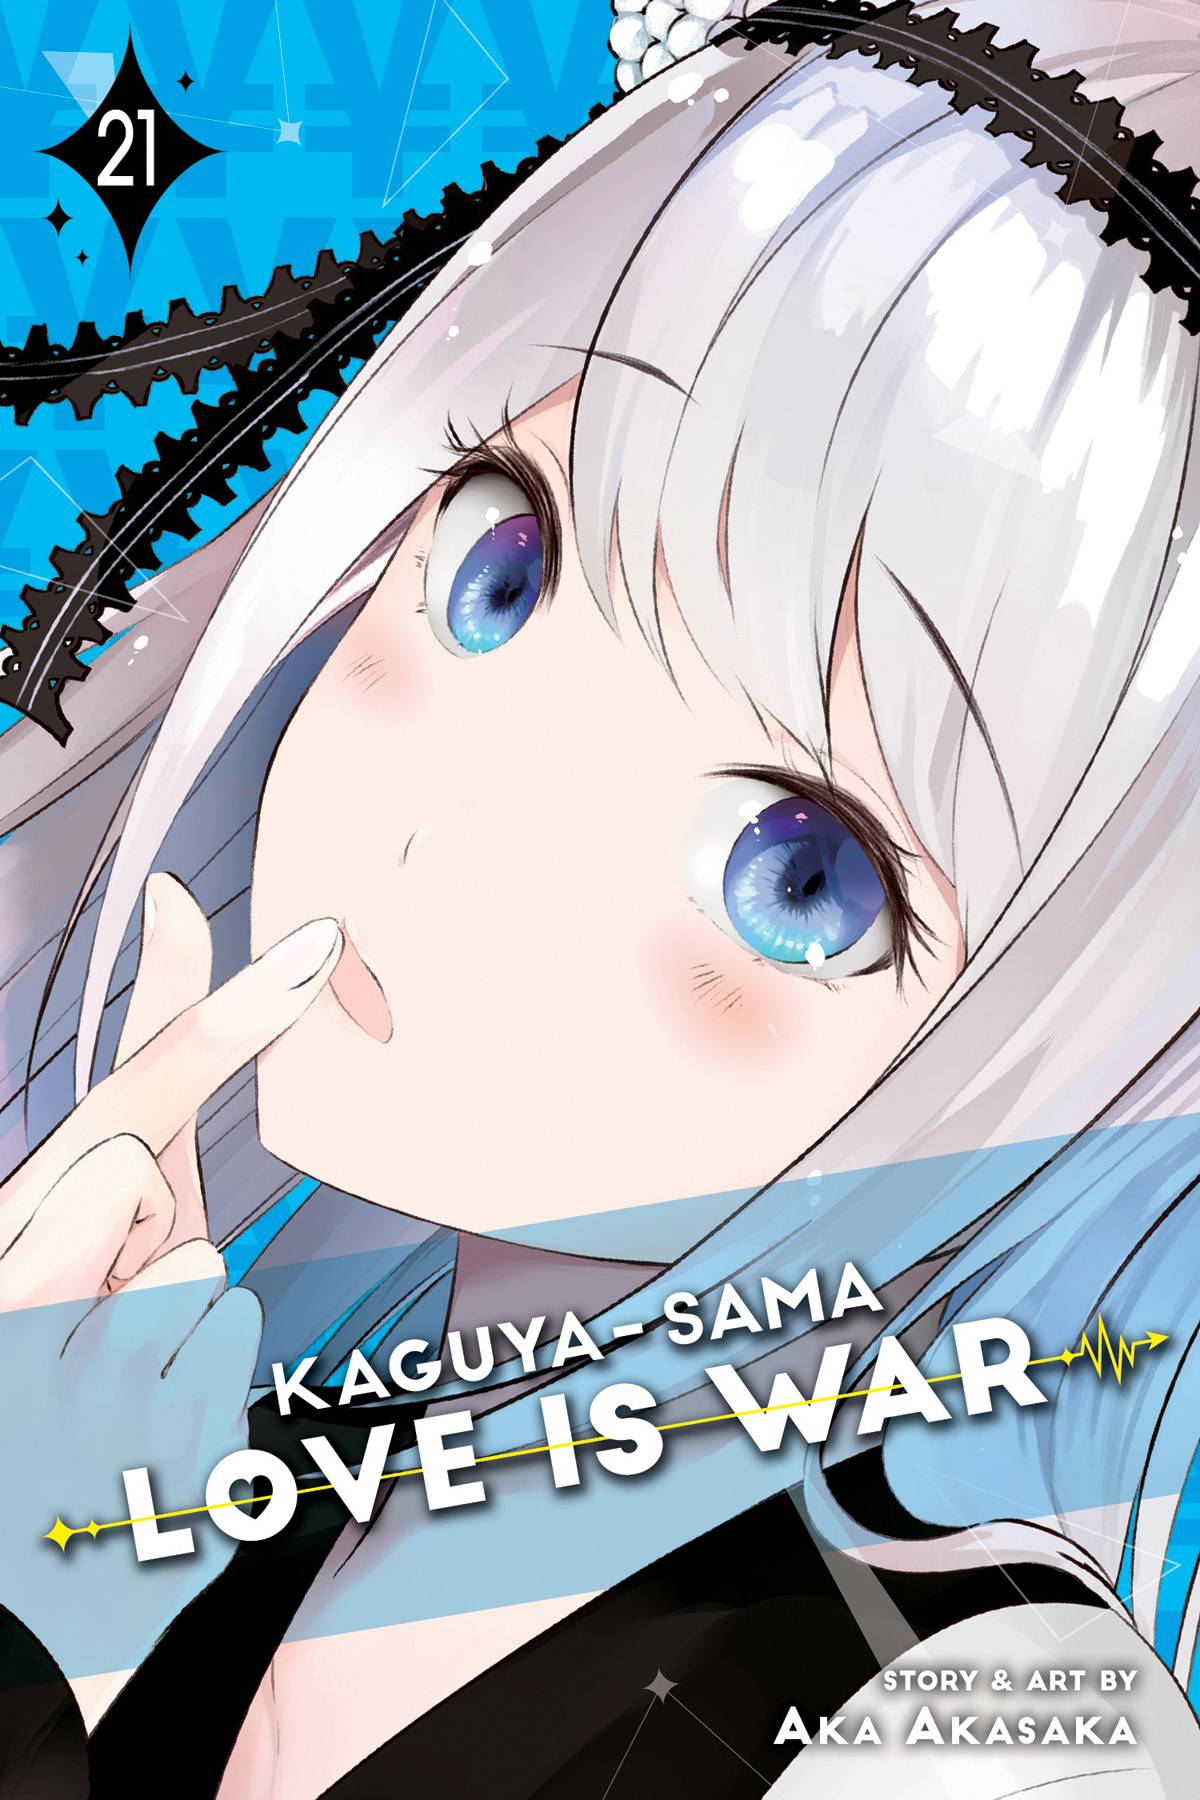 Kaguya Sama Love is War Vol 21